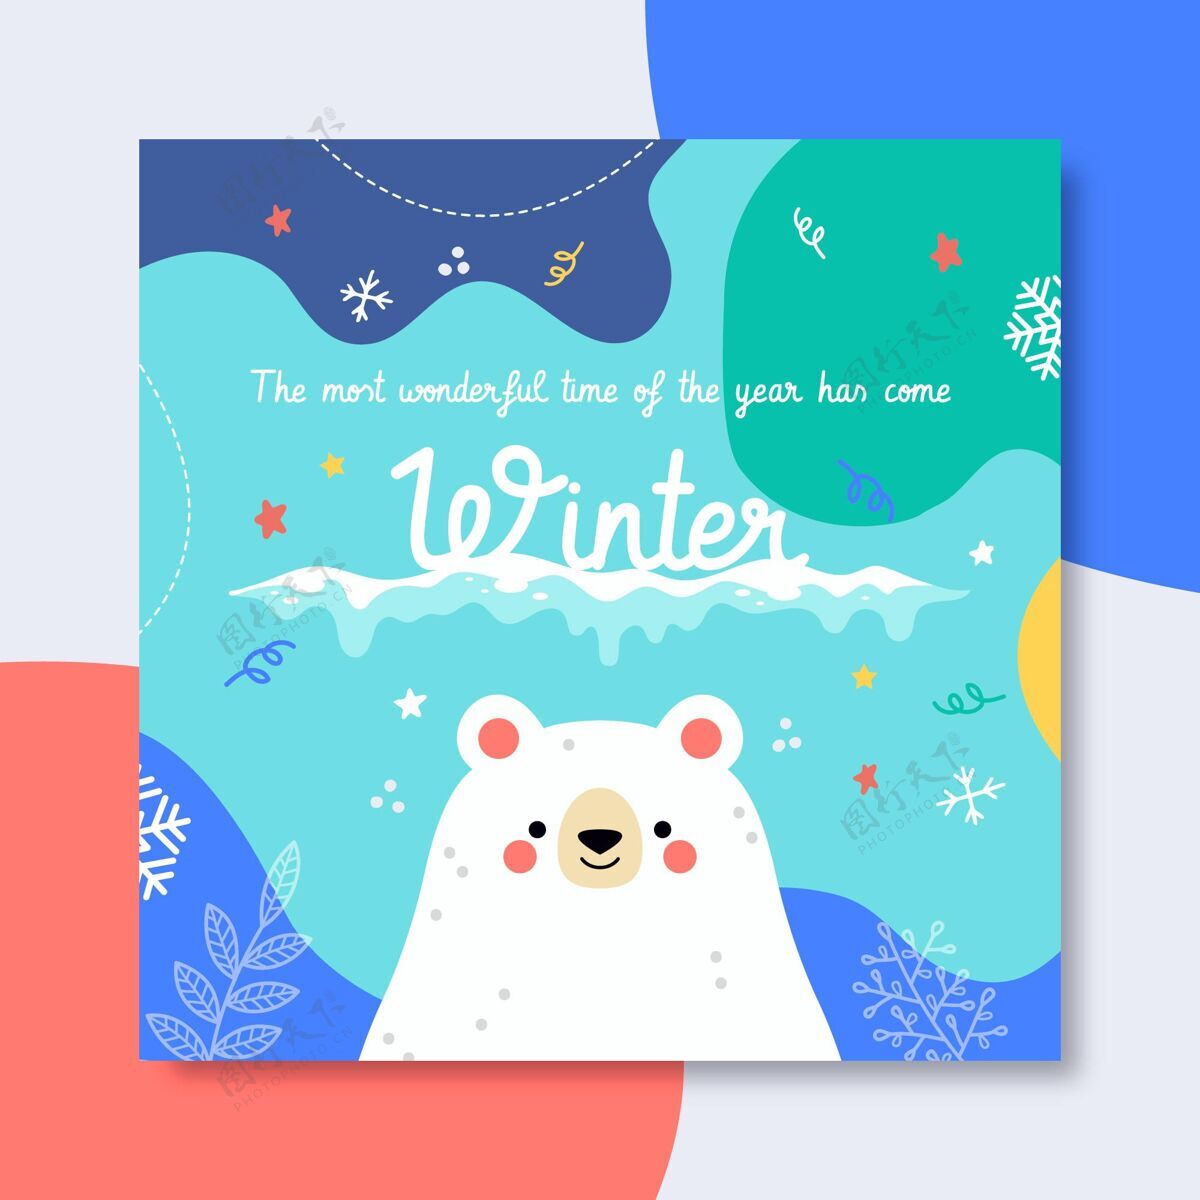 社交冬季facebook帖子模板插图季节冬季帖子